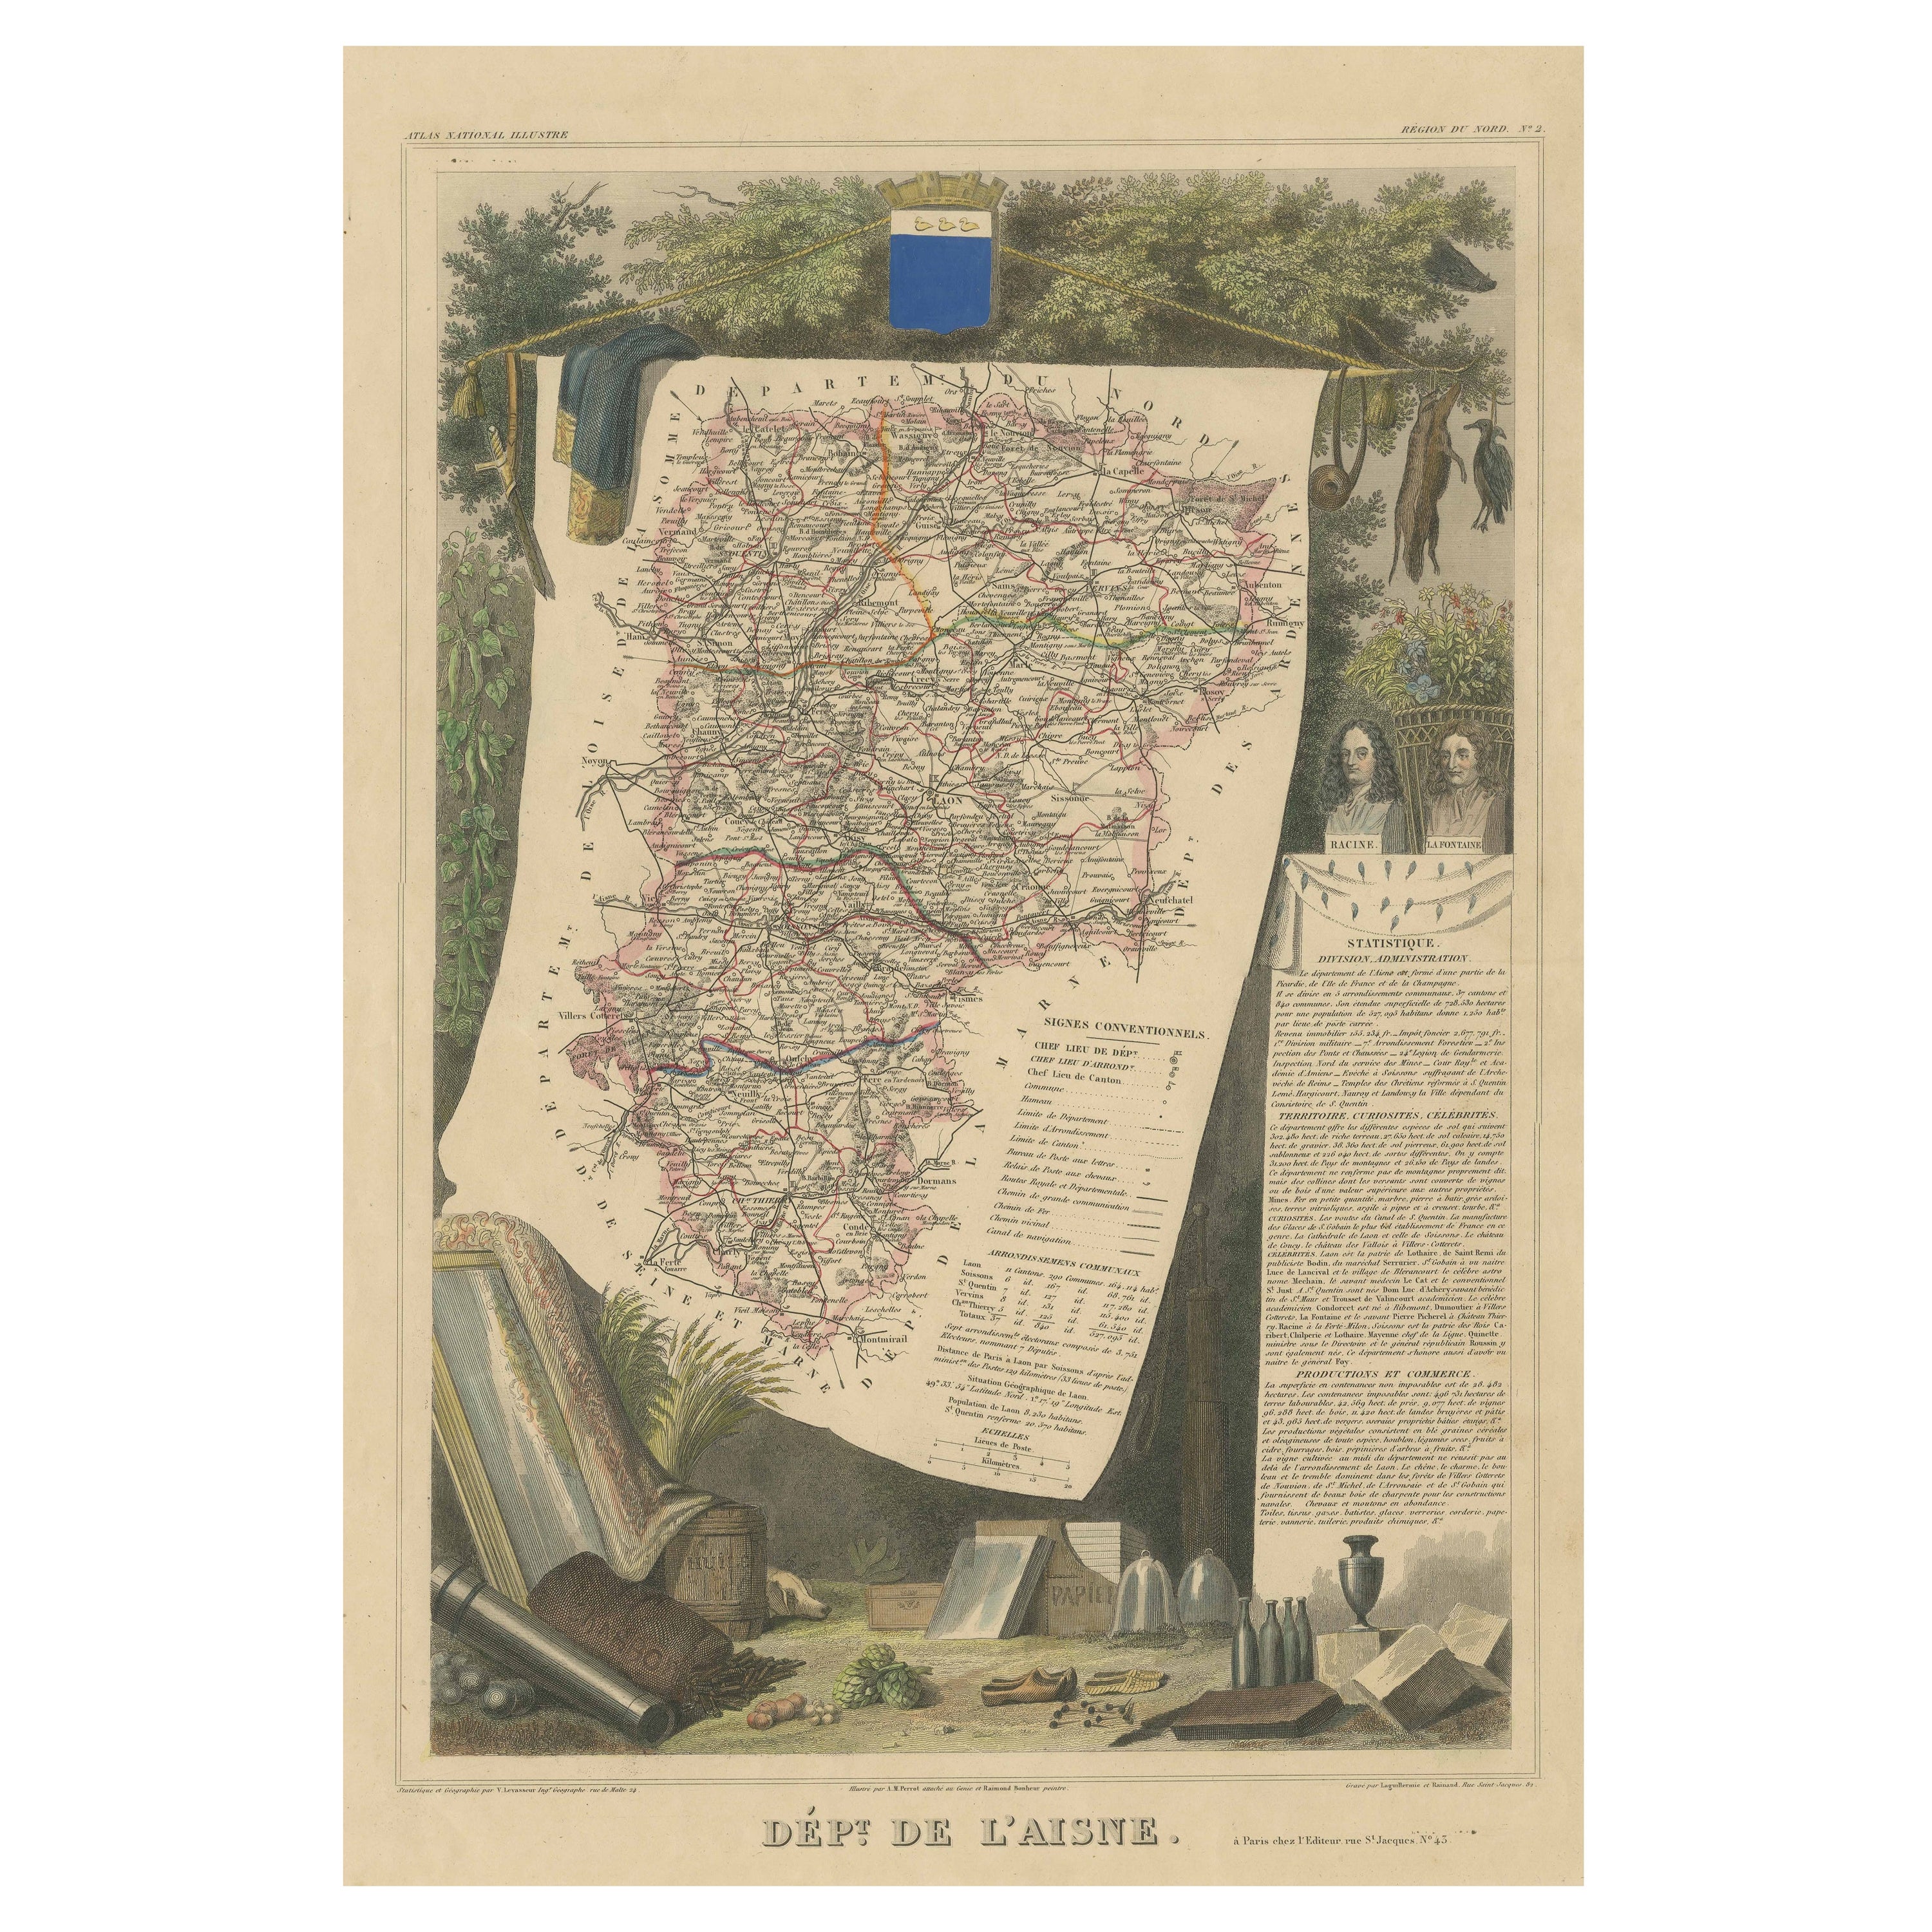 Mapa Antiguo Coloreado a Mano del Departamento de L'aisne, Francia